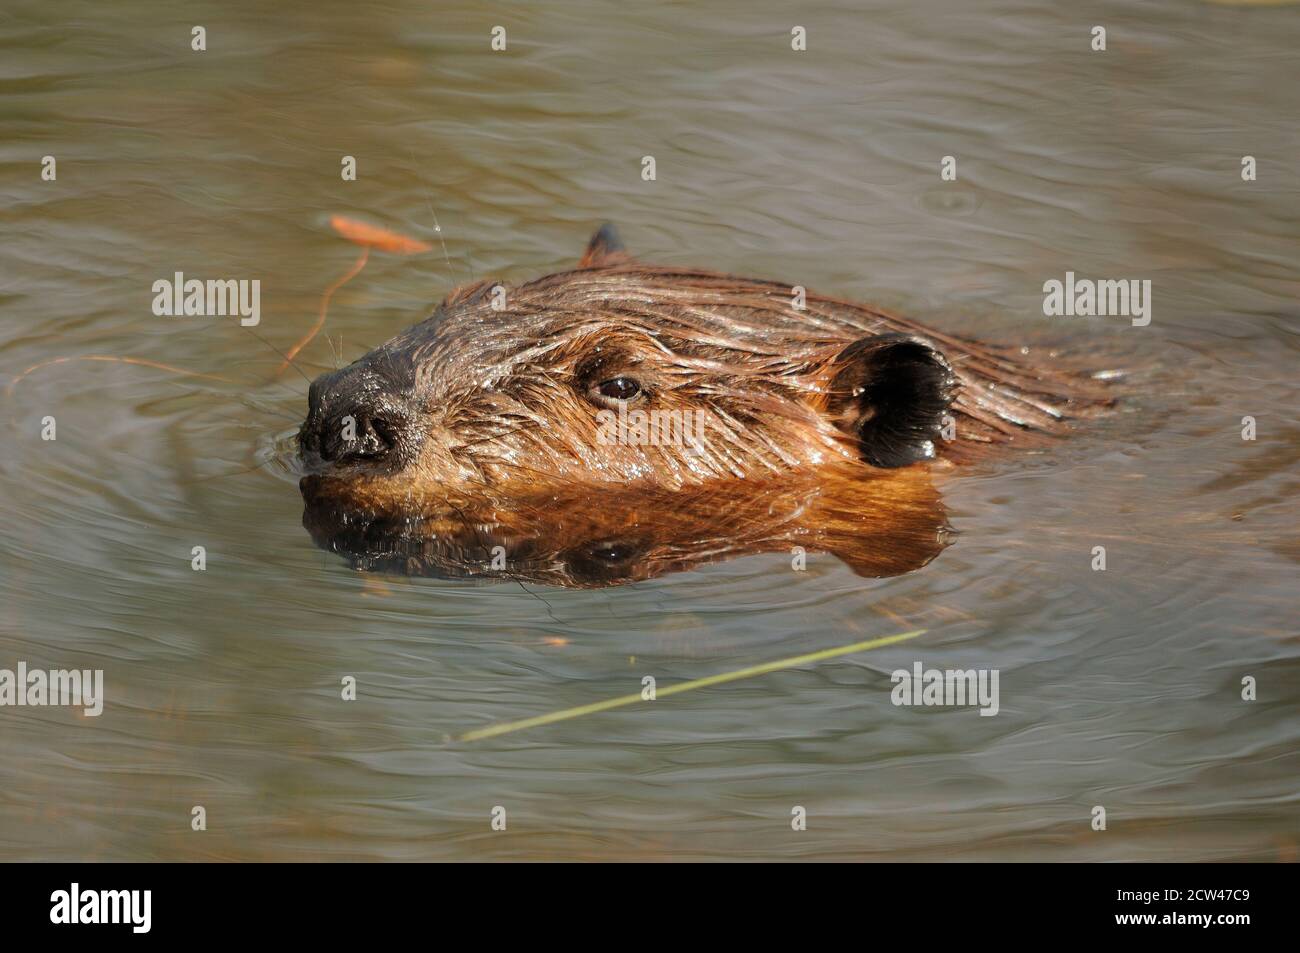 Biberkopf Nahaufnahme Profil im Wasser zeigt seine braunen Fell, Kopf, Auge, Ohren, Nase, mit einem Wasser Hintergrund in seinem Lebensraum und Umgebung. Stockfoto